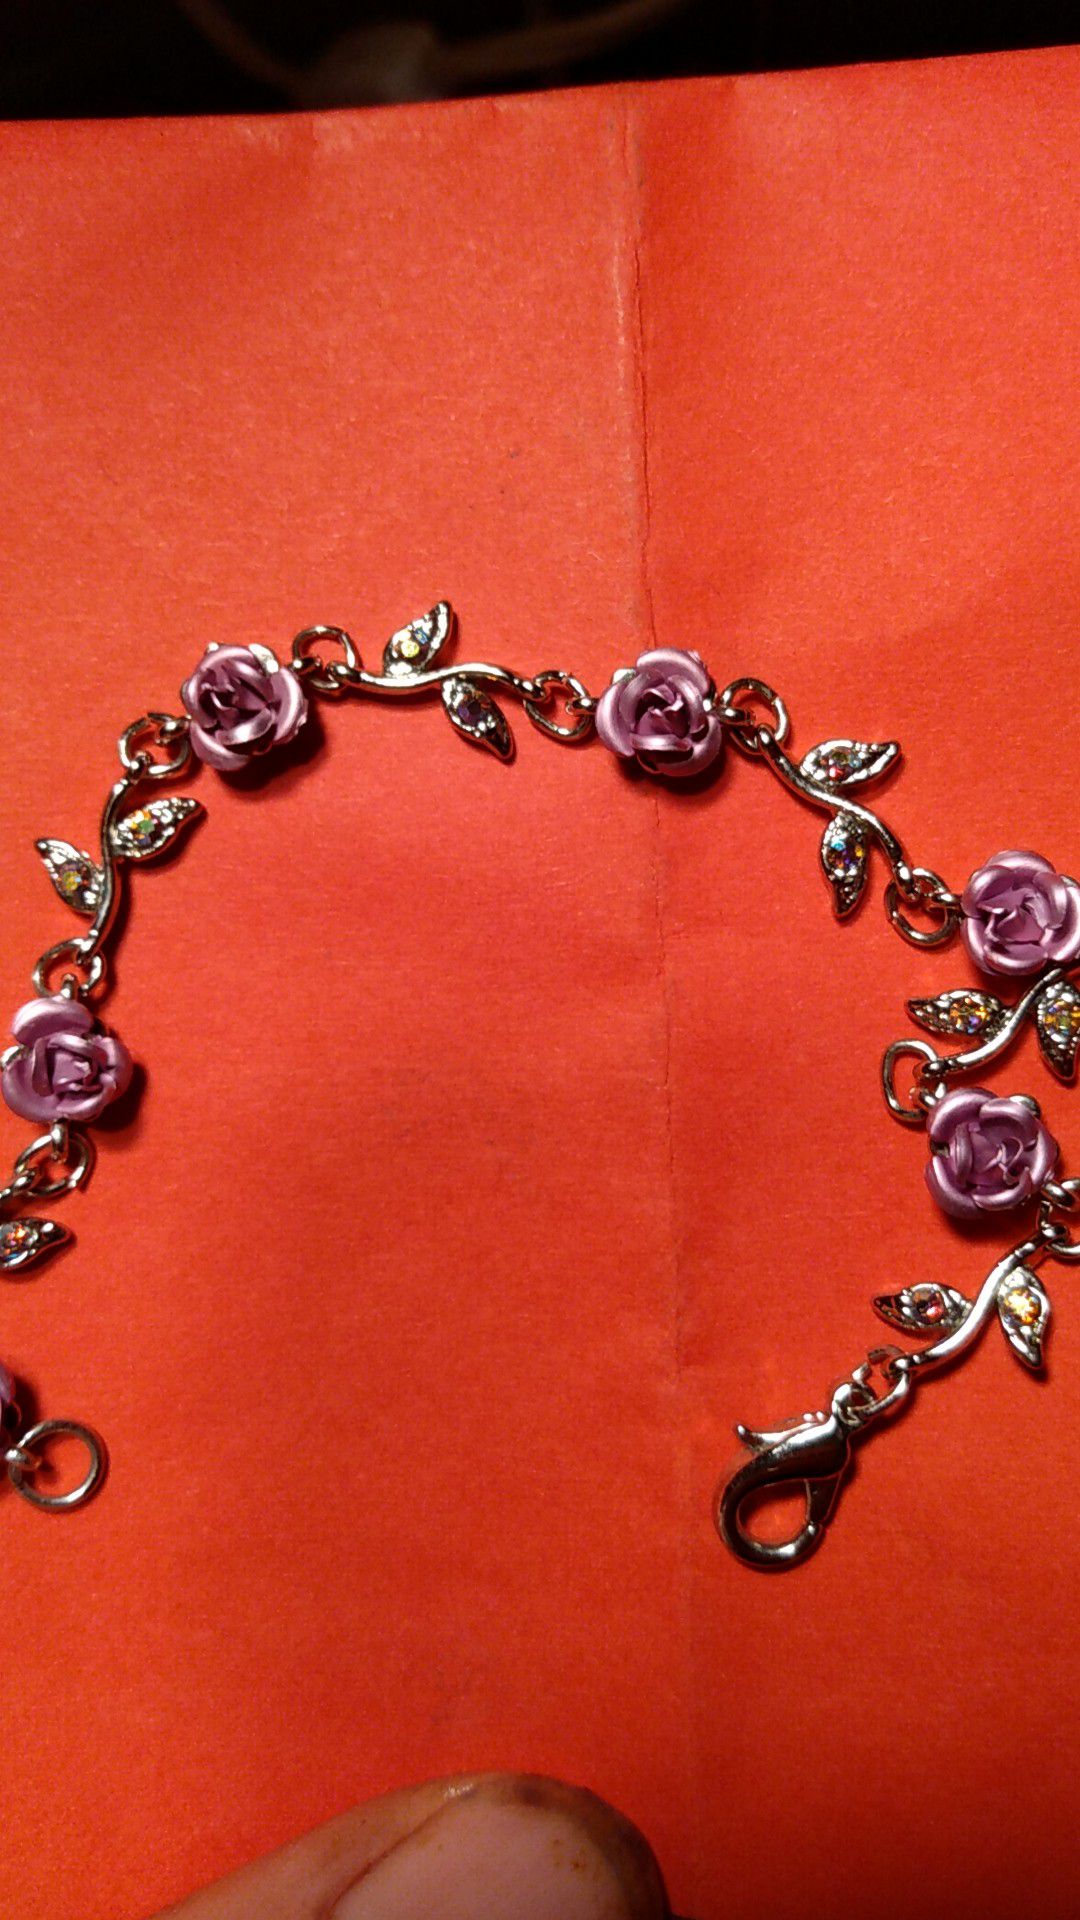 Beautiful purple rose bracelet.